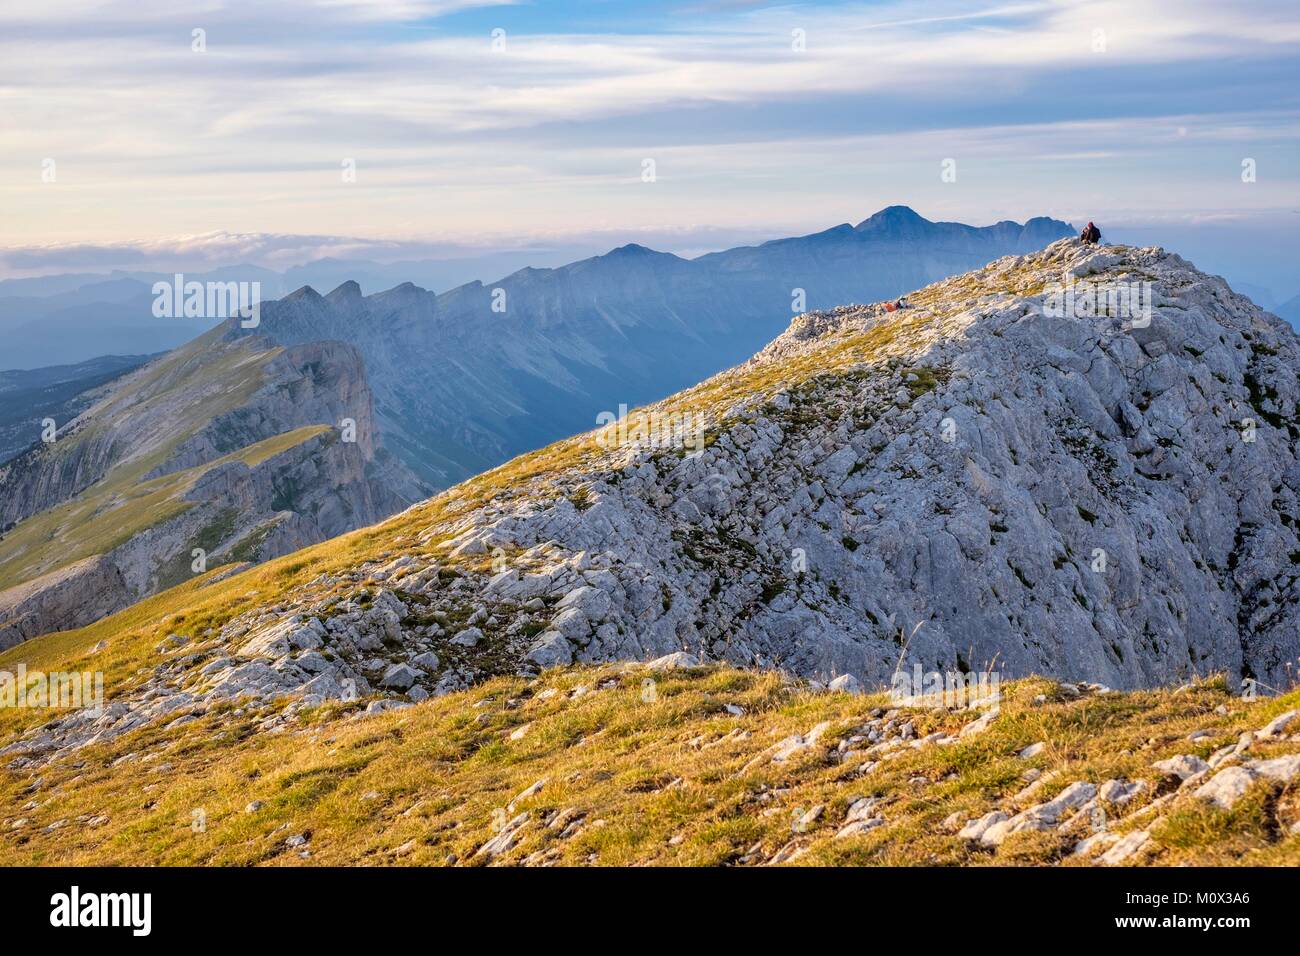 France,Isère,Parc Naturel Régional du Vercors, la réserve naturelle nationale des hauts plateaux du Vercors,le Vercors vu du haut des crêtes de Grand Veymont (alt : 2341 m), point le plus élevé du massif du Vercors Banque D'Images